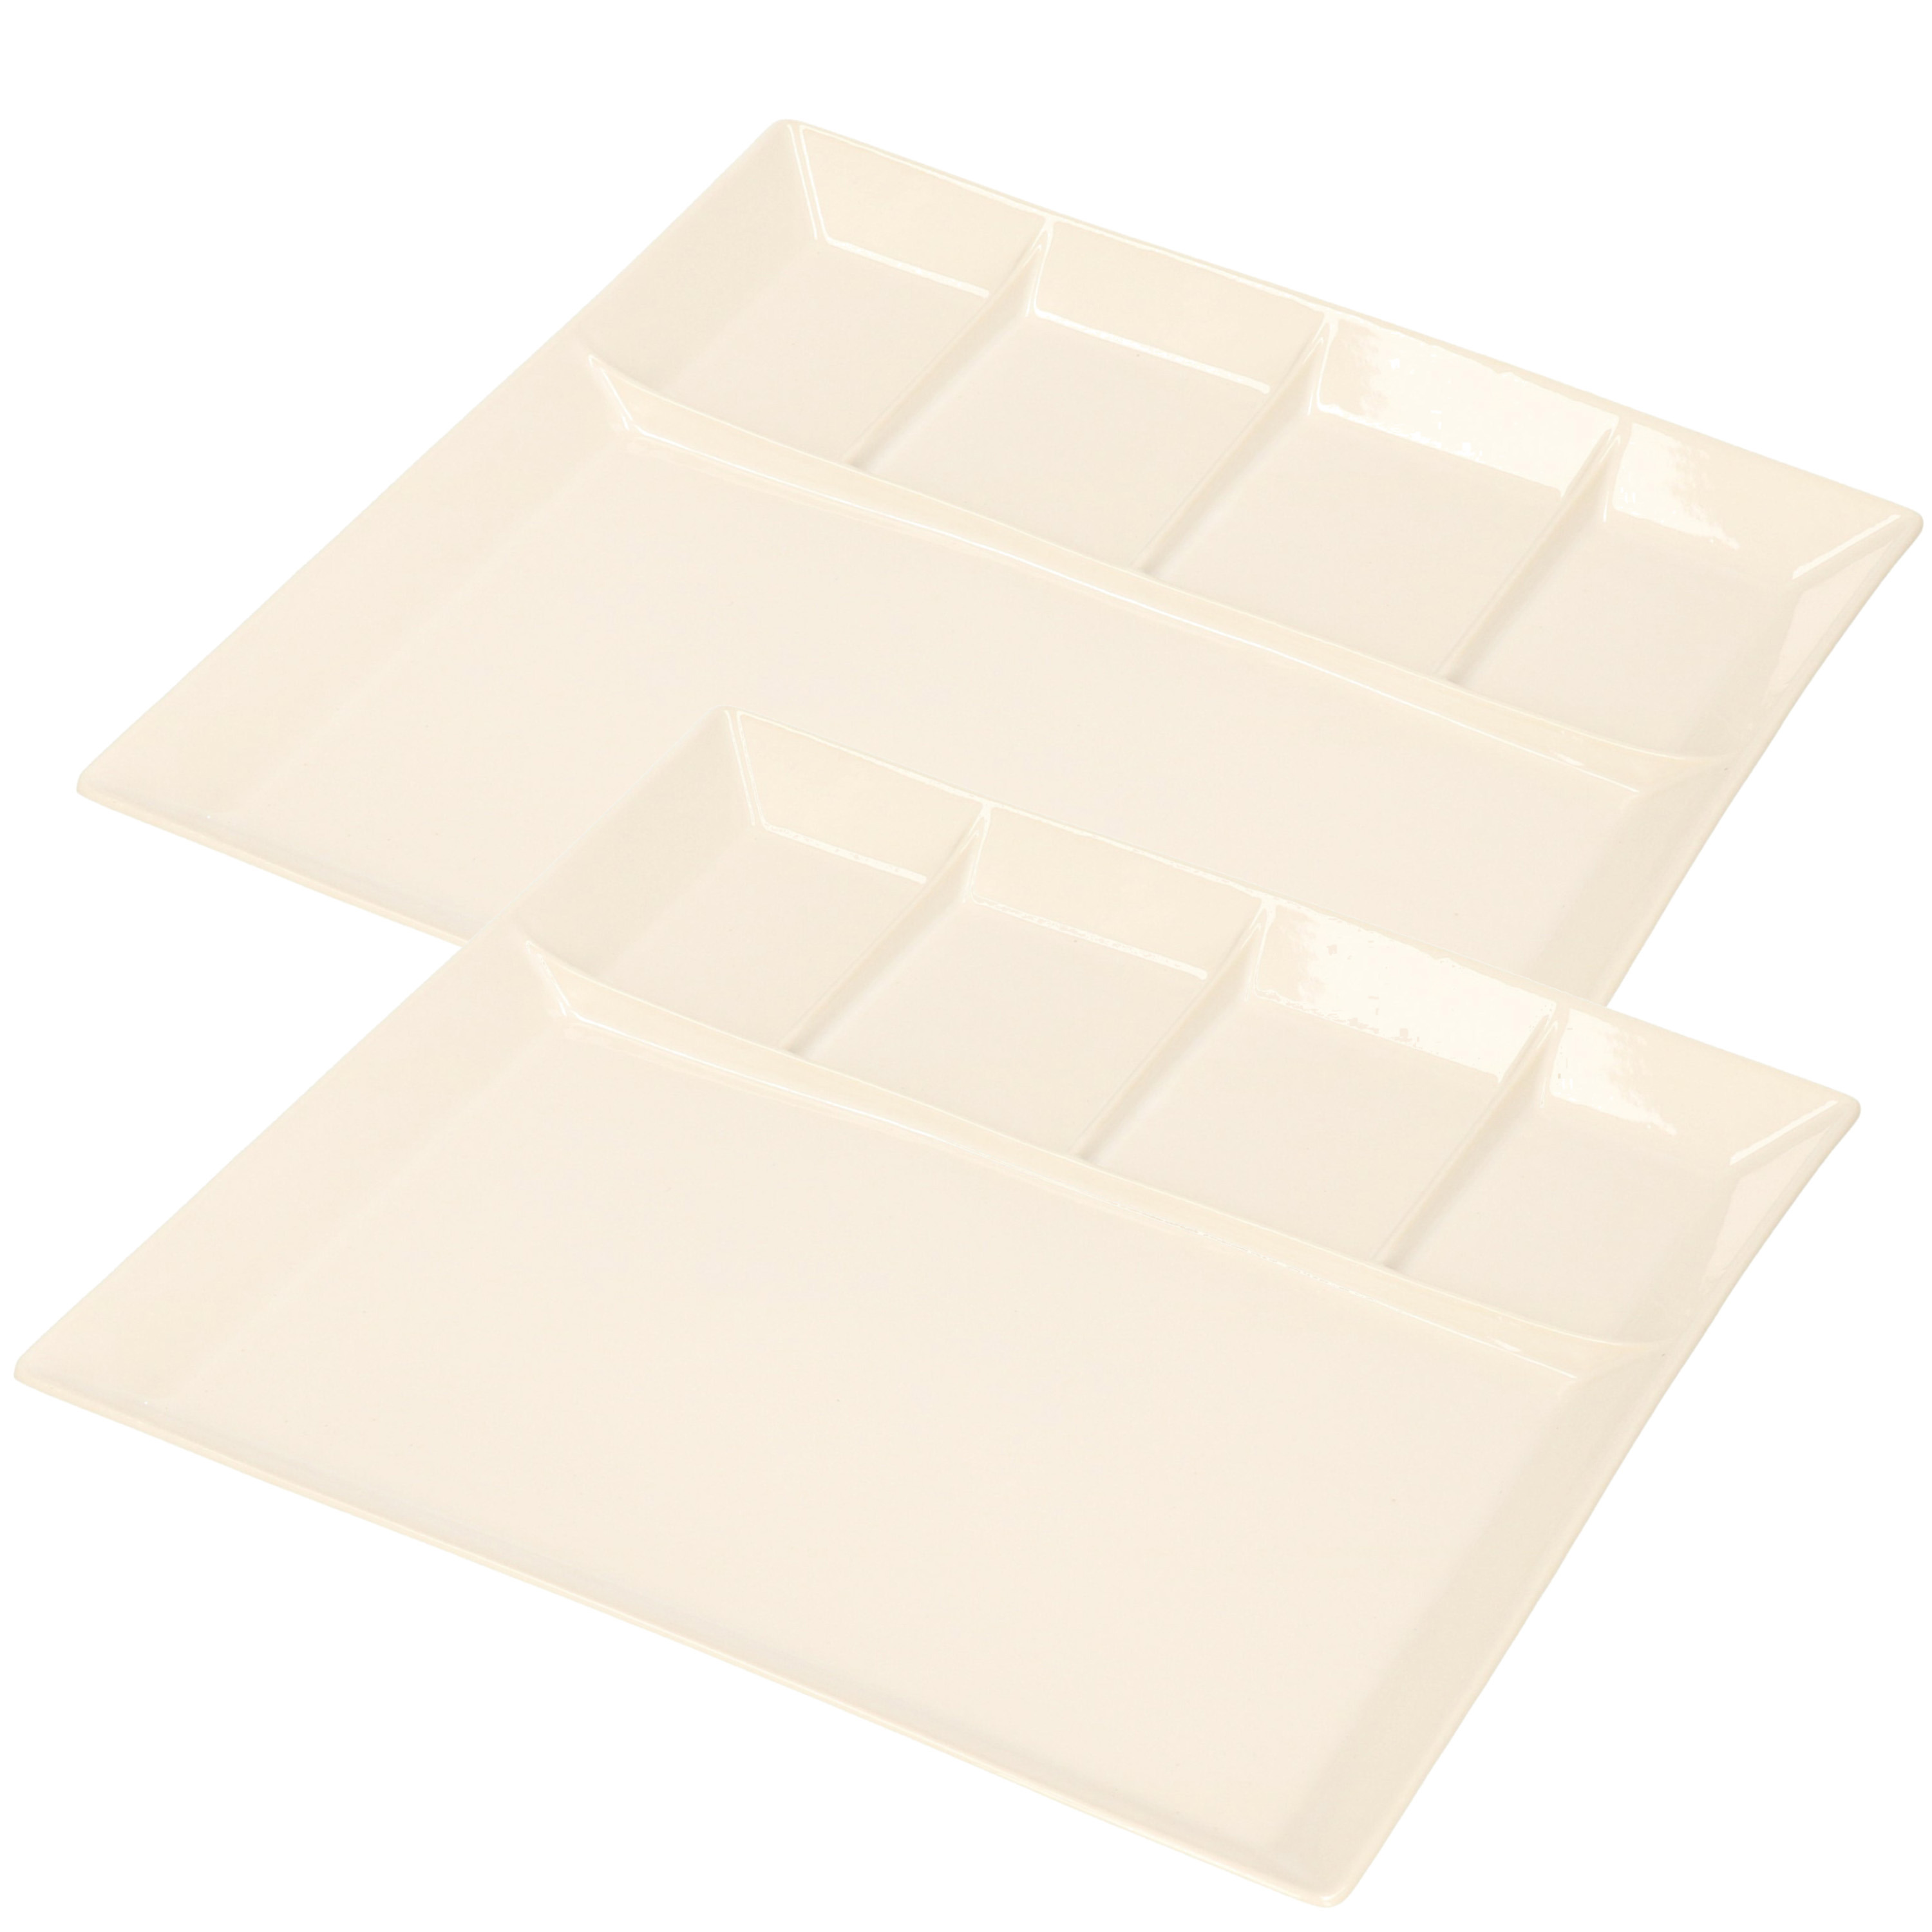 6x stuks wit fondue-gourmet bord 5-vaks vierkant aardewerk 24 cm